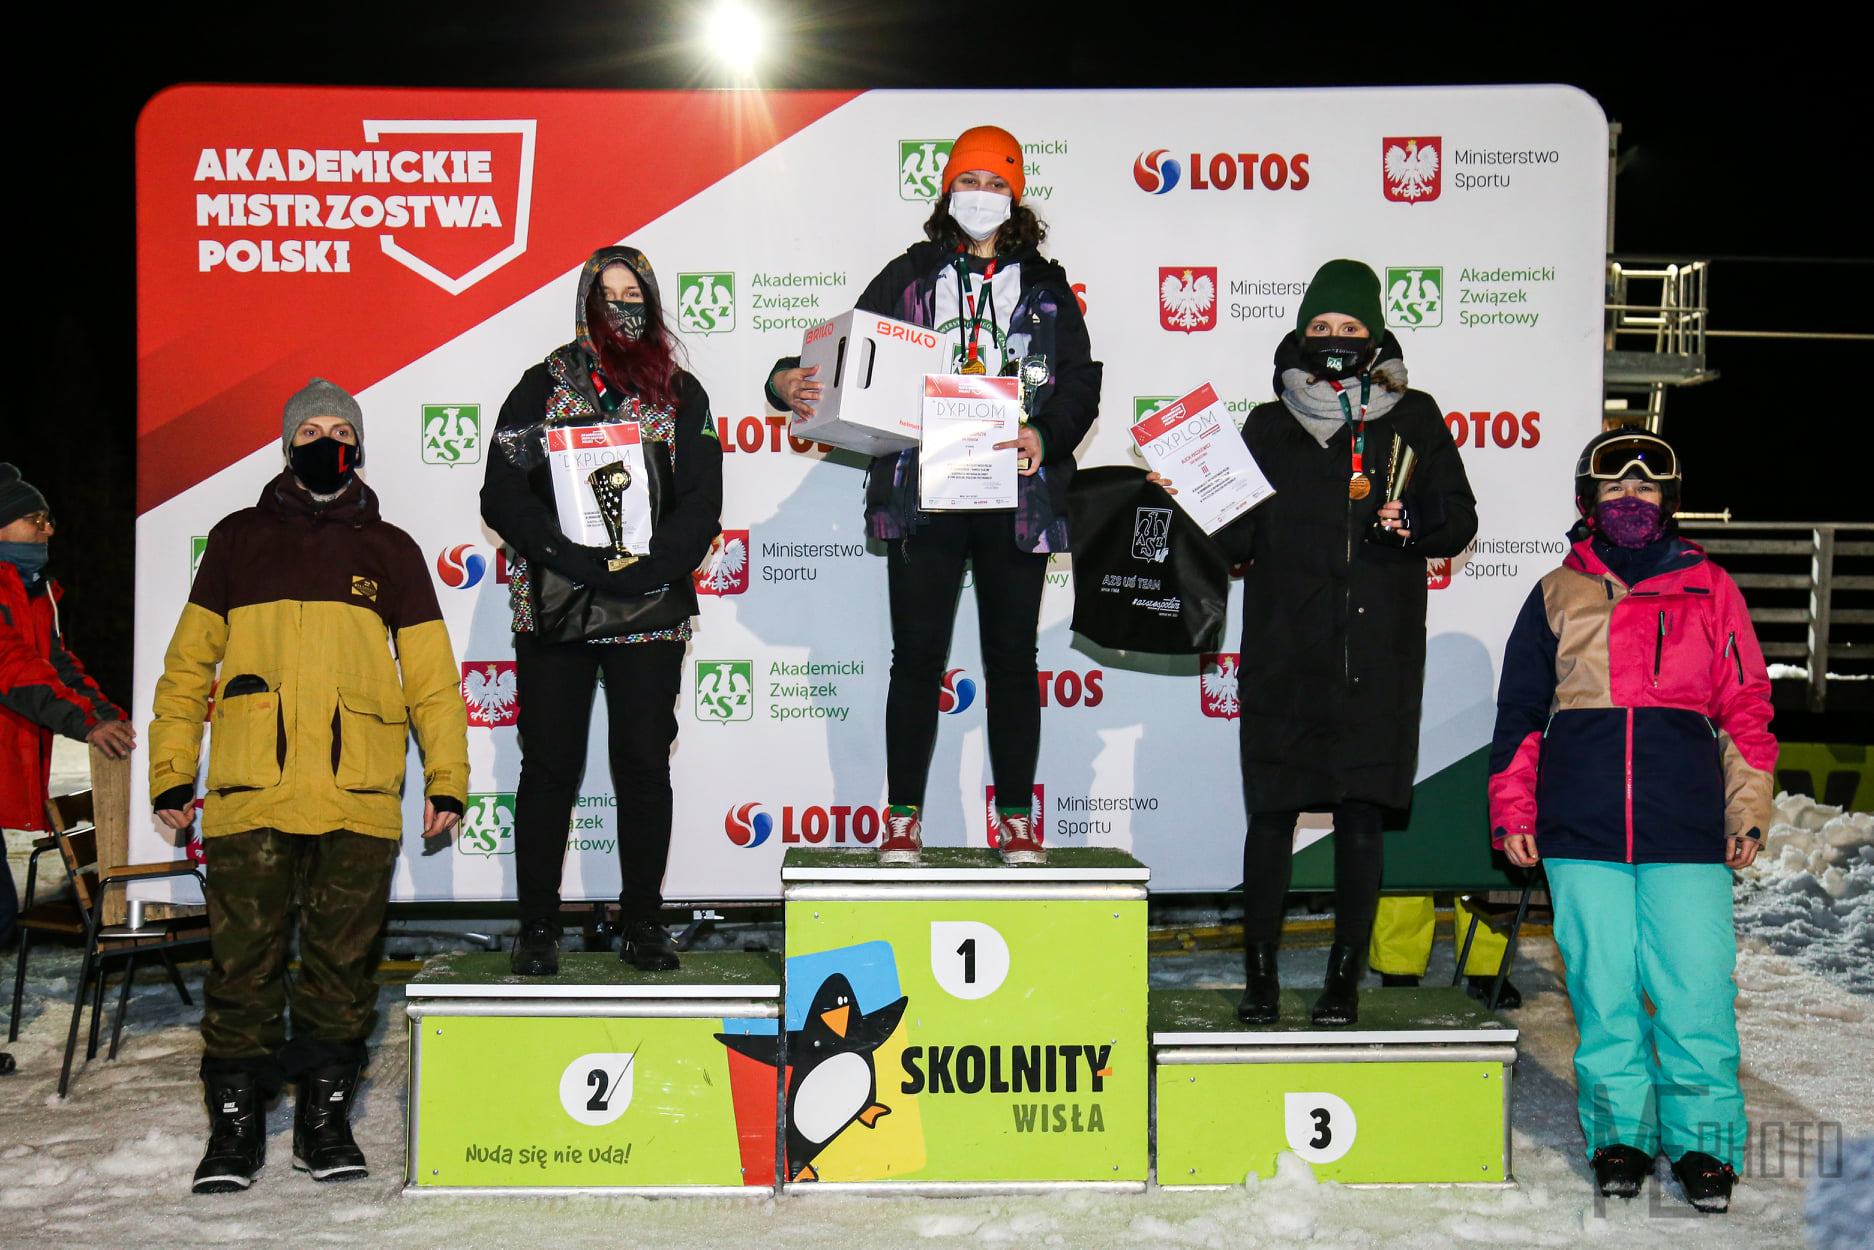 Banked slalom kobiet w typie USP i brązowy medal dla Alicji Paszkiewicz - kolorowa fotografia